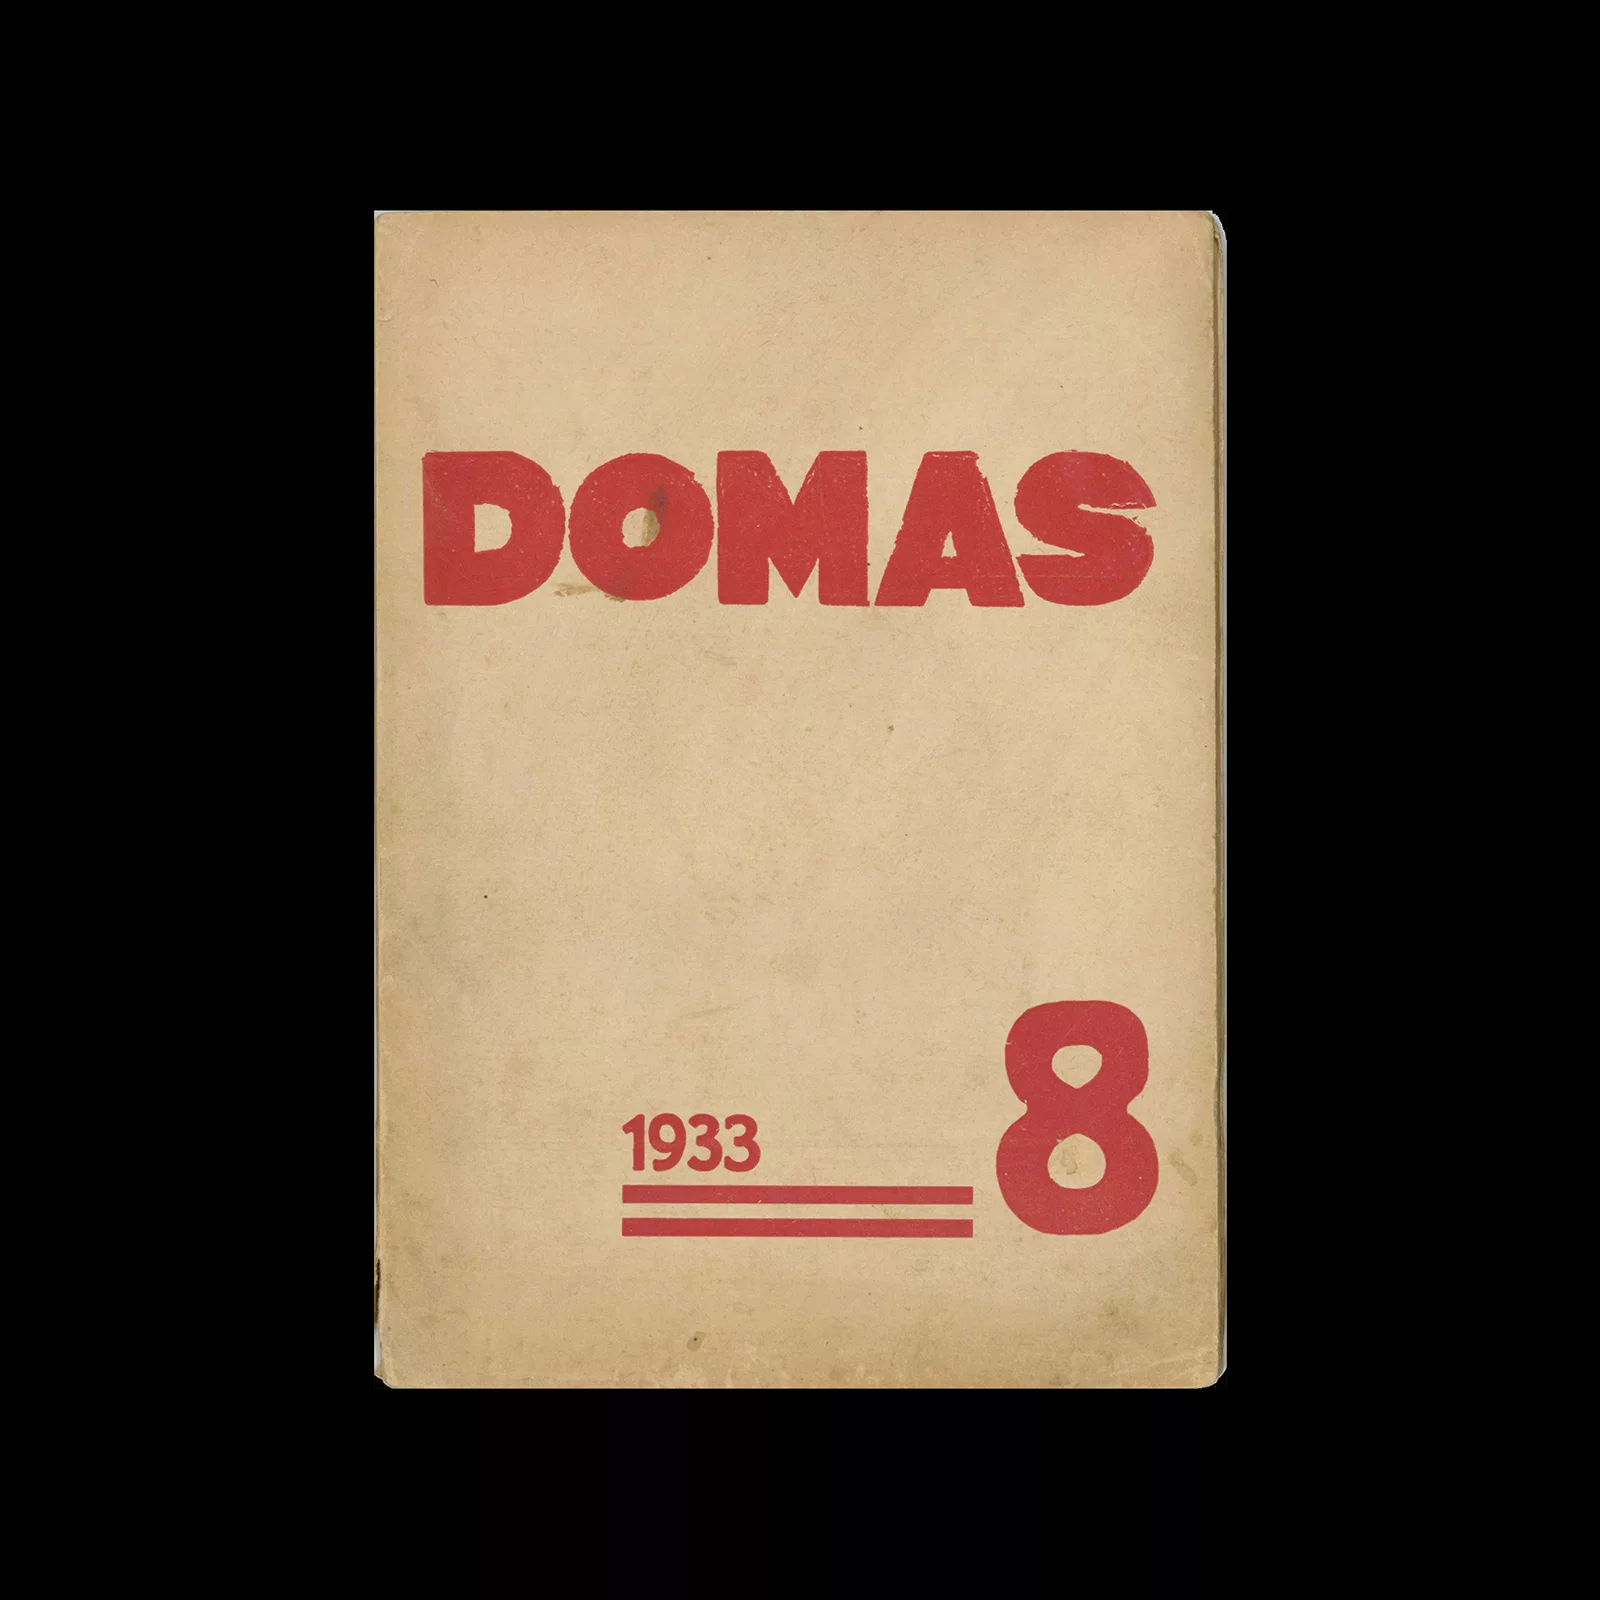 Domas, 8, 1933